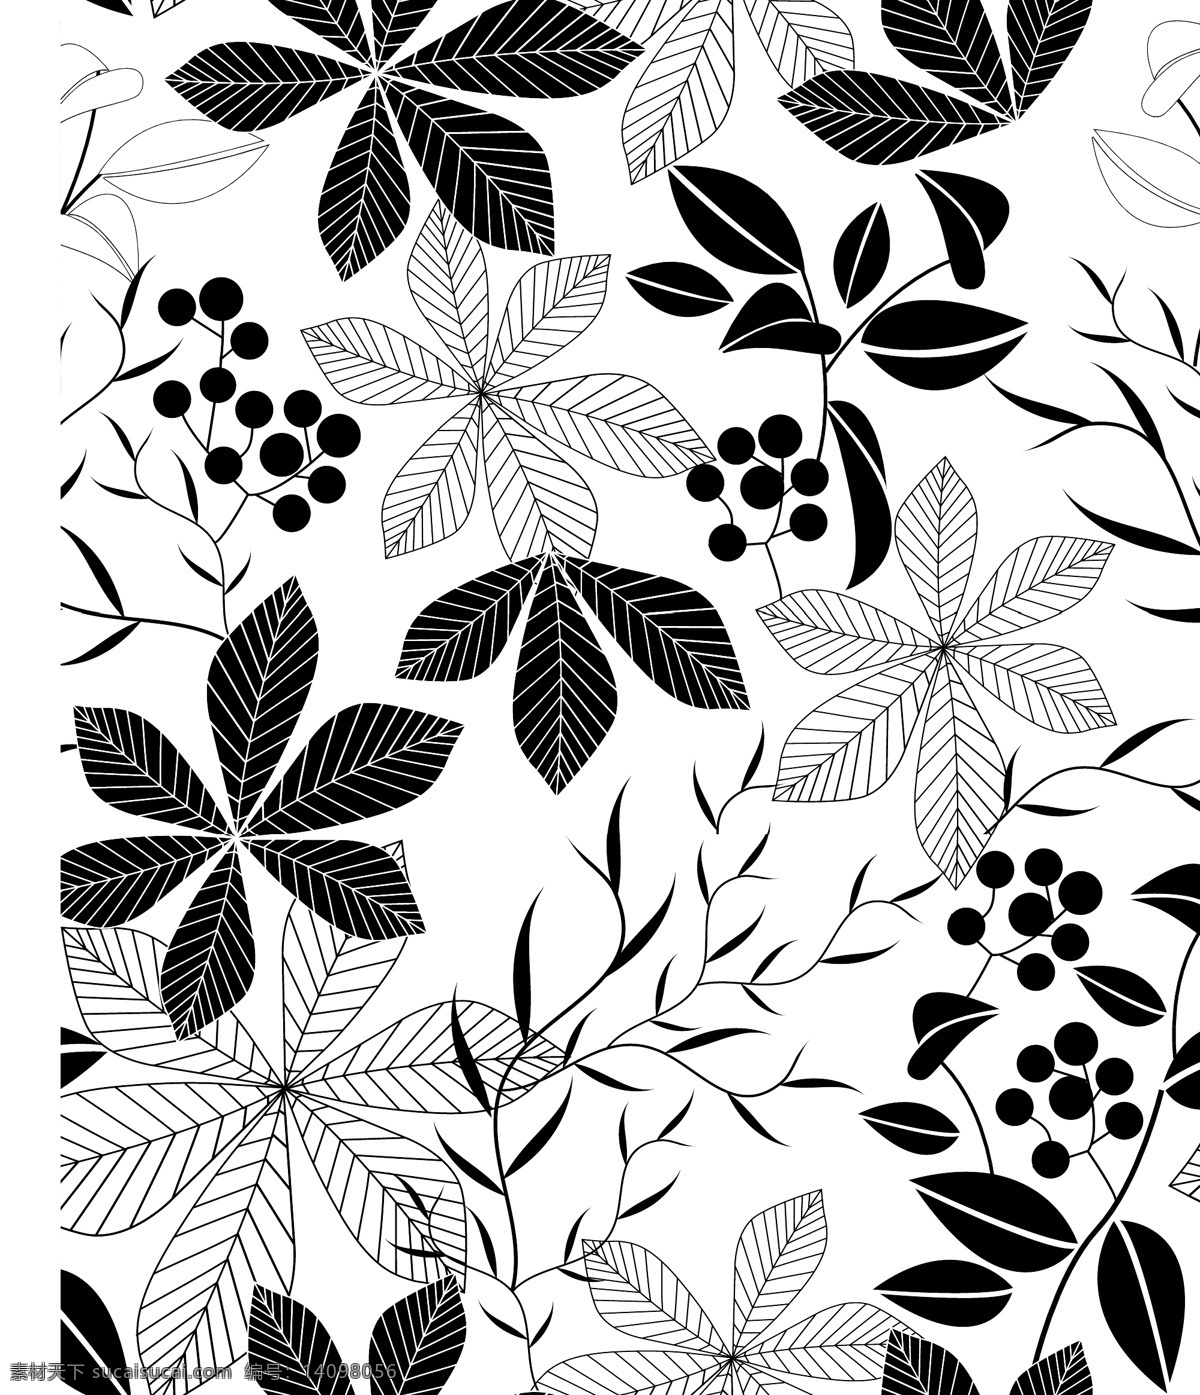 黑白叶子图案 叶子 四方连续 面料印花 碎花 服装面料印花